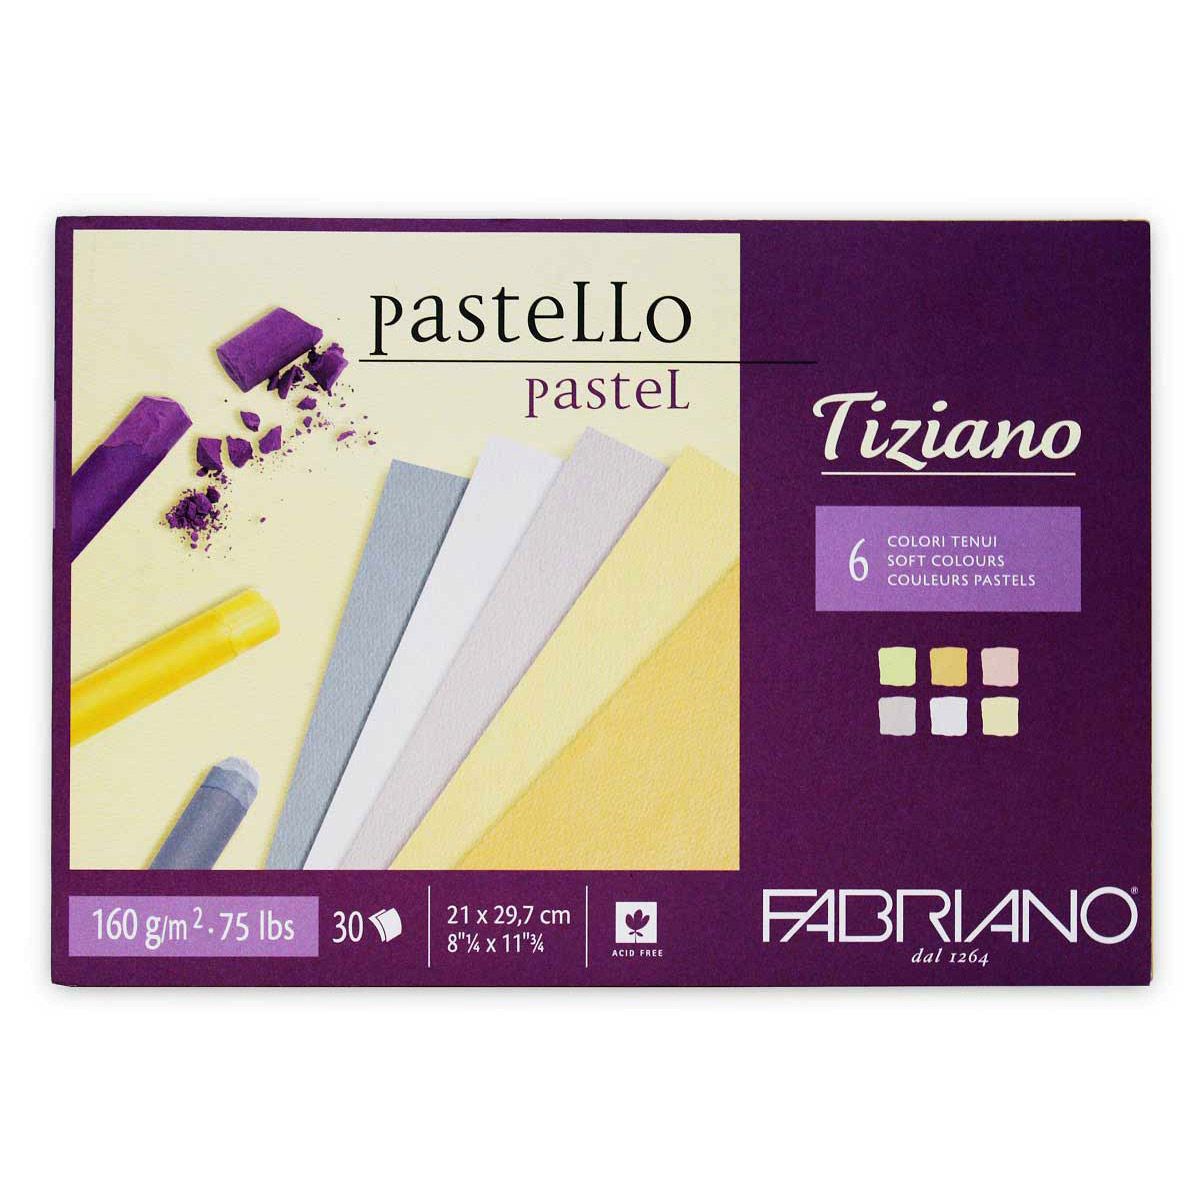 Fabriano Tiziano Pastel Pad (6 Soft Colours) 8-1/4" x 11-3/4"